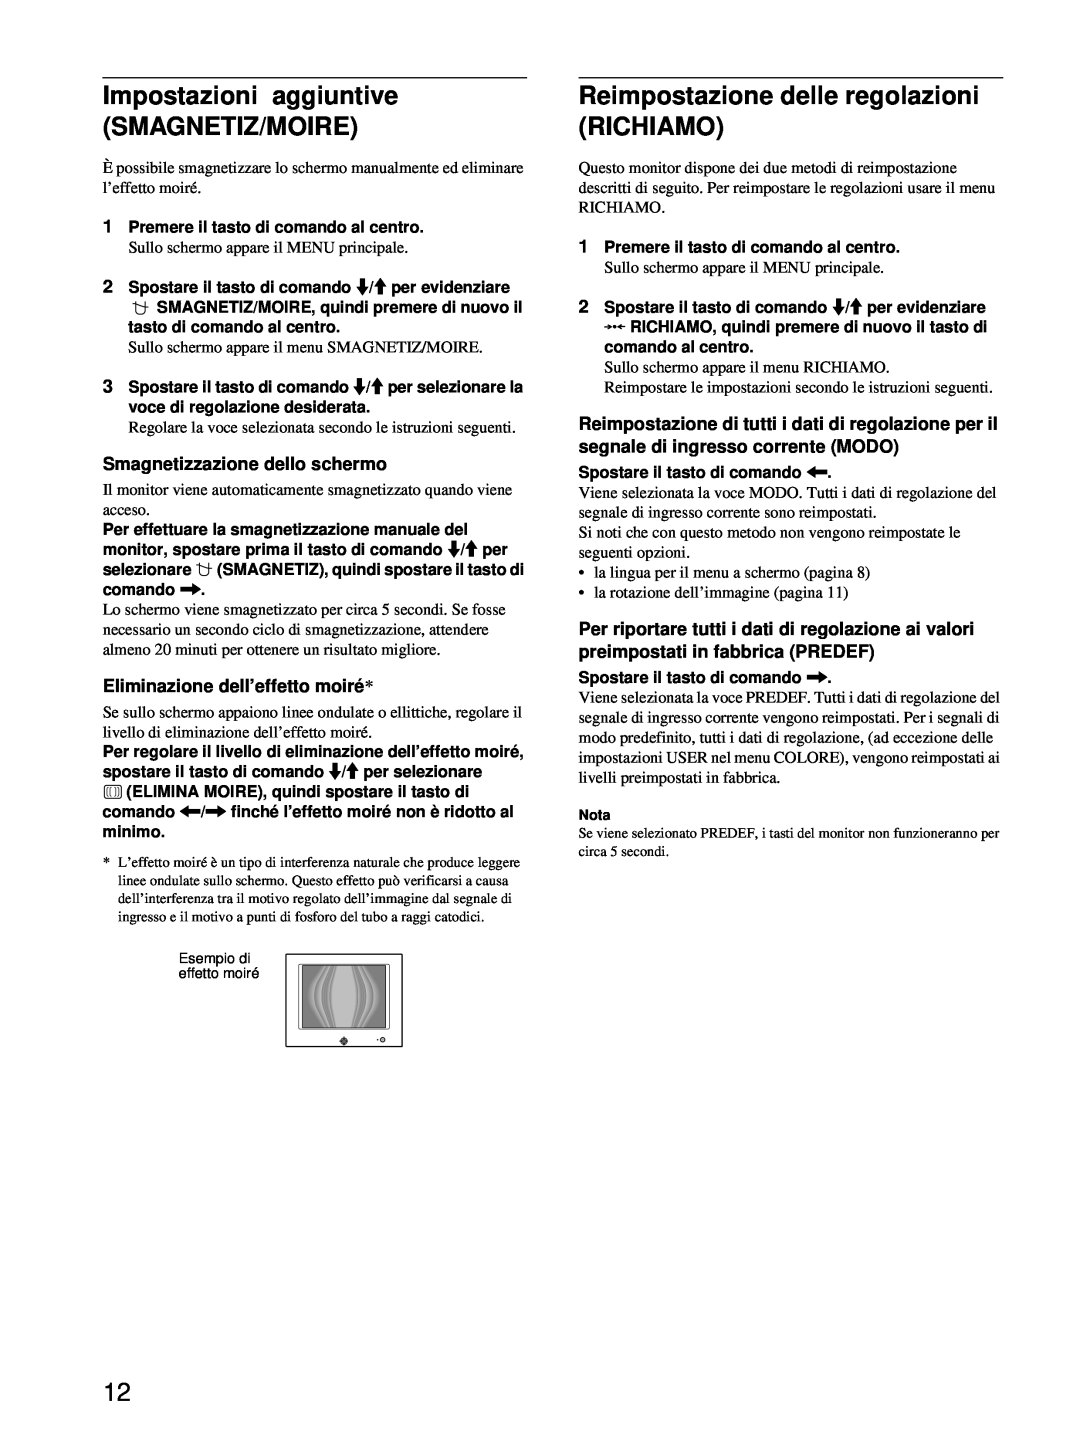 Sony HMD-A220 operating instructions Impostazioni aggiuntive SMAGNETIZ/MOIRE, Reimpostazione delle regolazioni RICHIAMO 